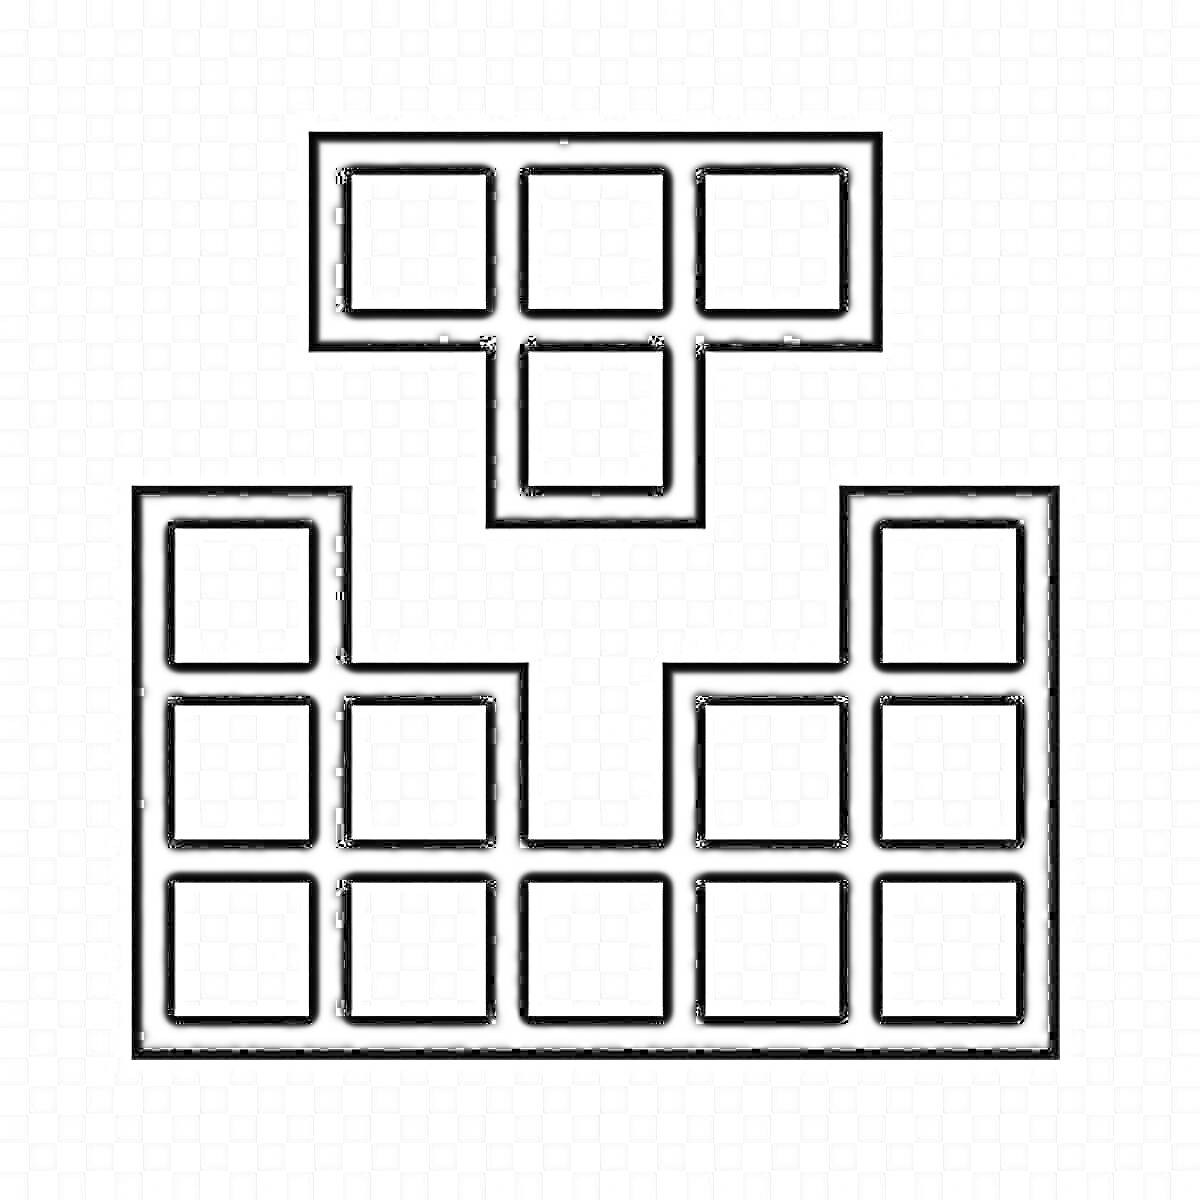 Тетрис фигуры: Т-образная фигура и два столбца с квадратными блоками